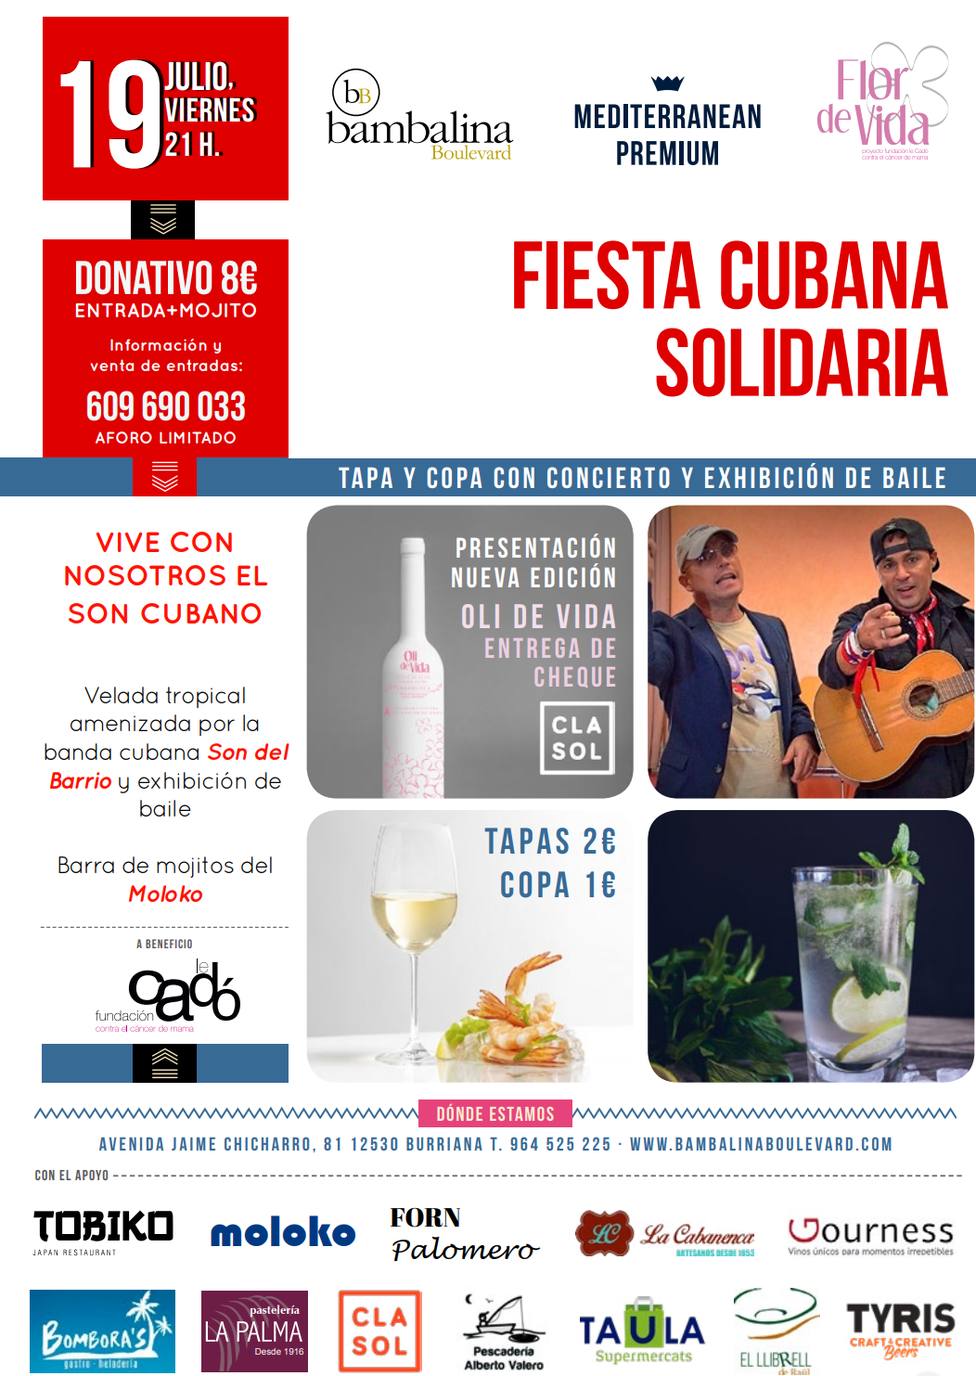 Fiesta Cubana Solidaria